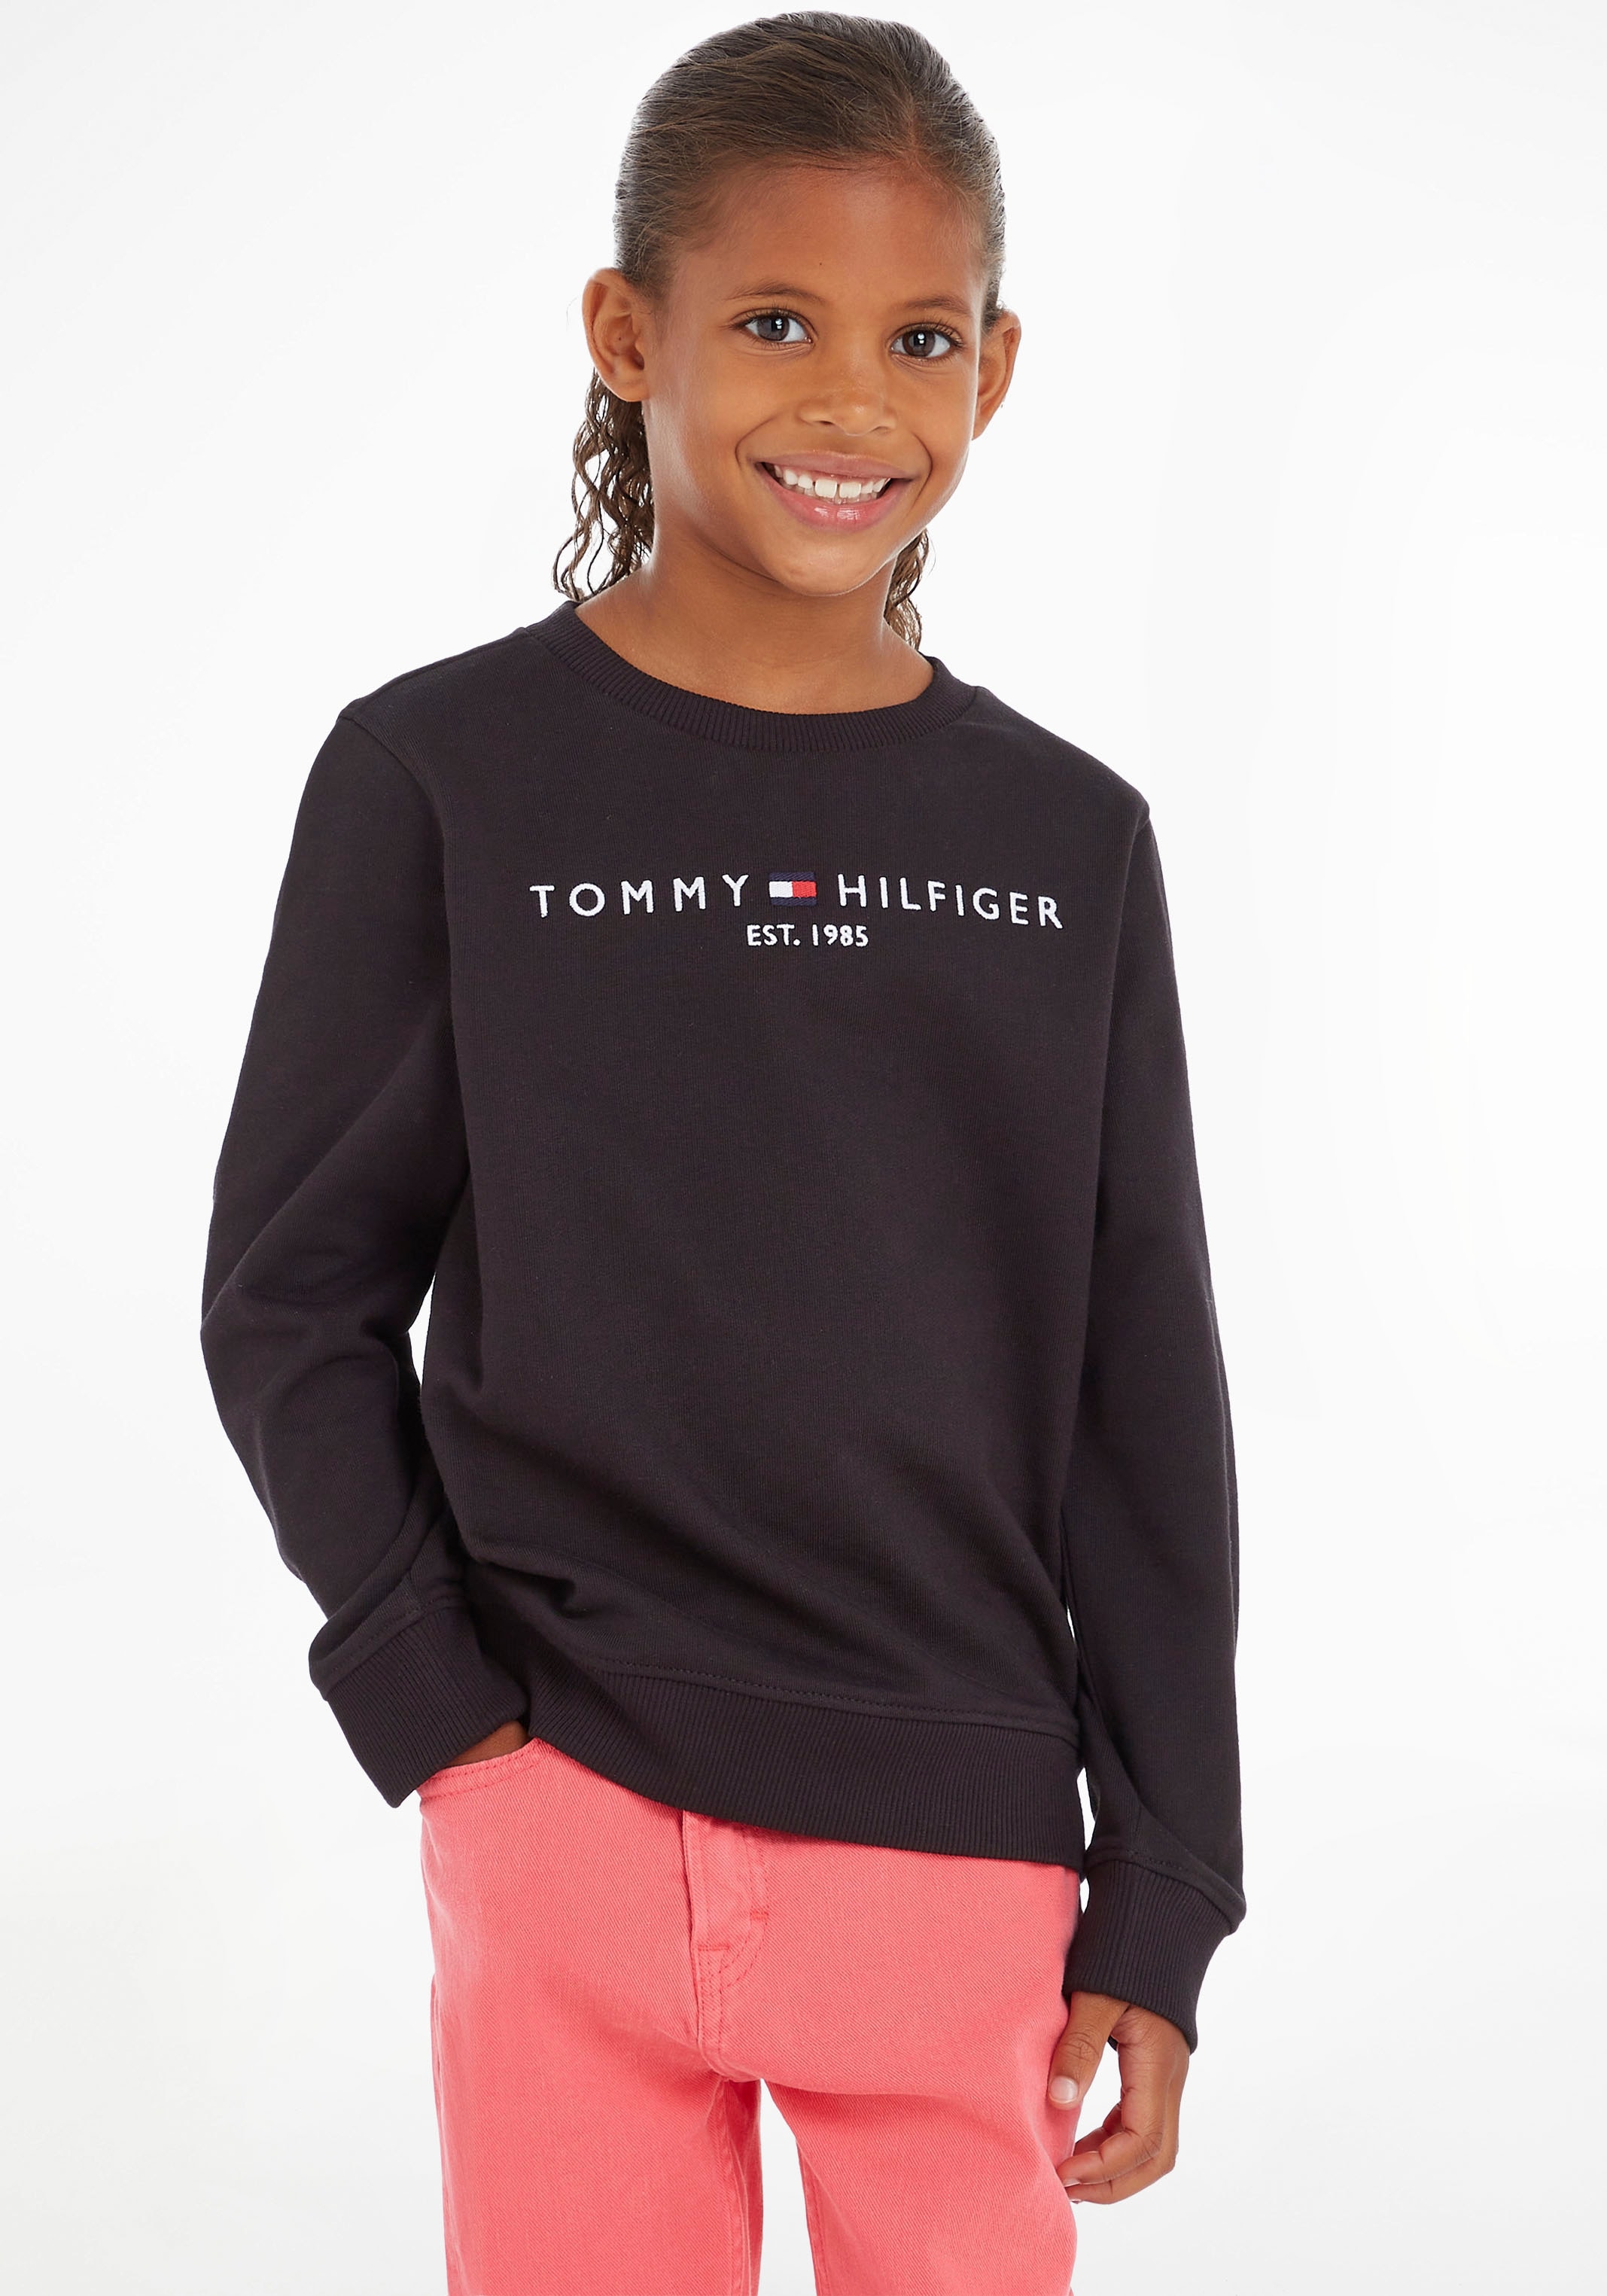 Tommy Hilfiger im Sweatshirt OTTO Shop Online